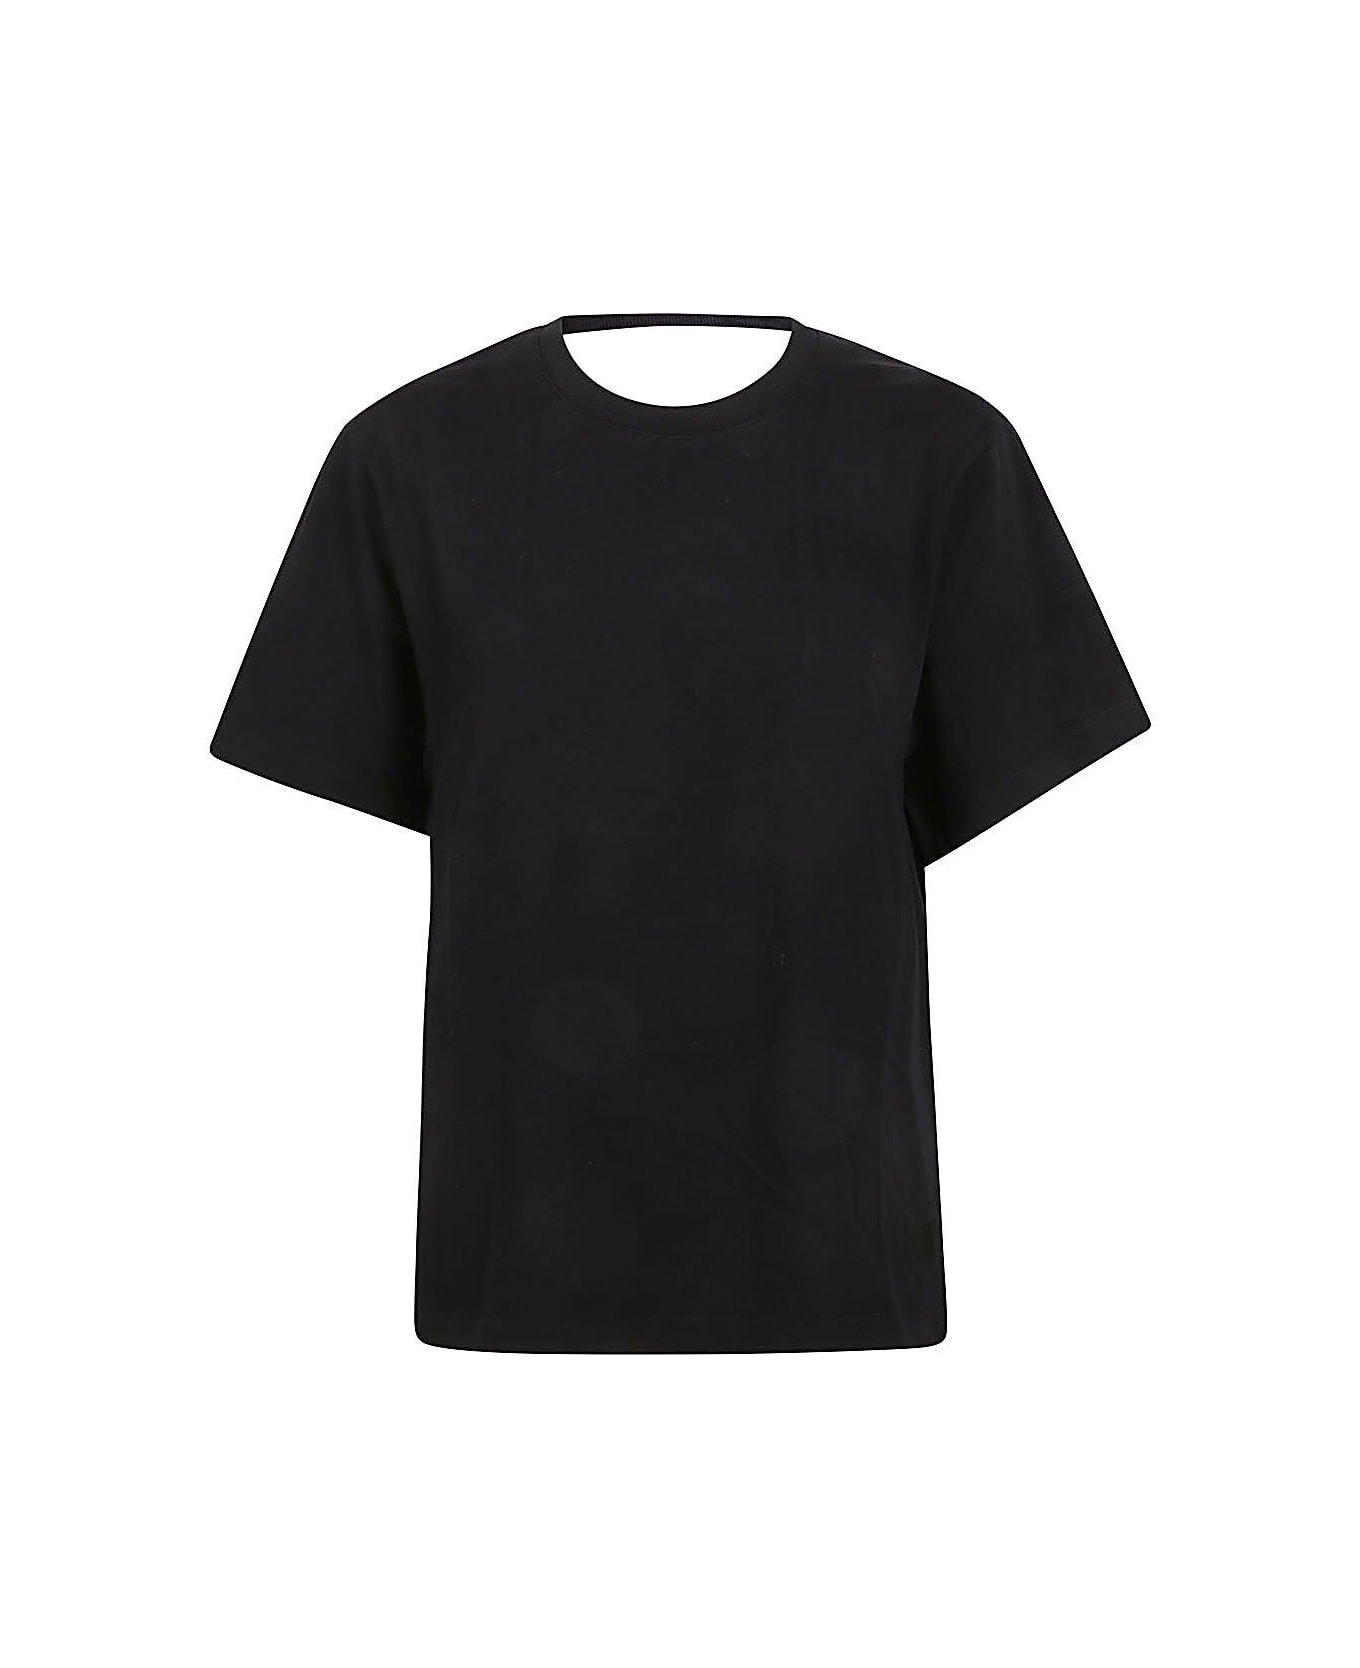 IRO Open Back Short-sleeved Top - Black Tシャツ